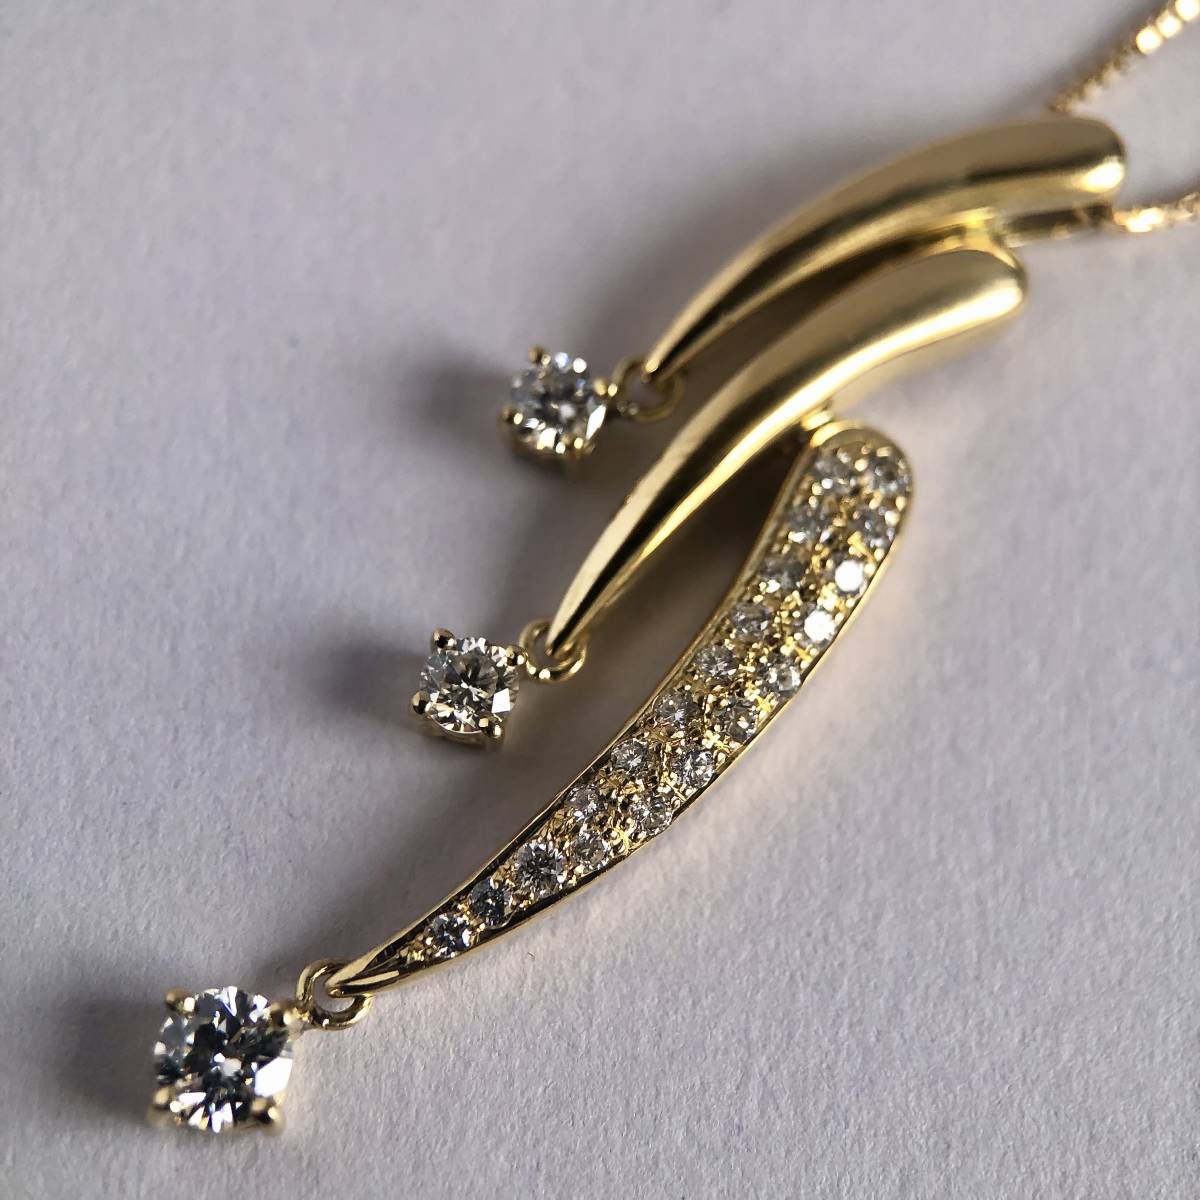 K18YG ダイヤモンド ペンダント ネックレス gold pendant necklace diamondのサムネイル